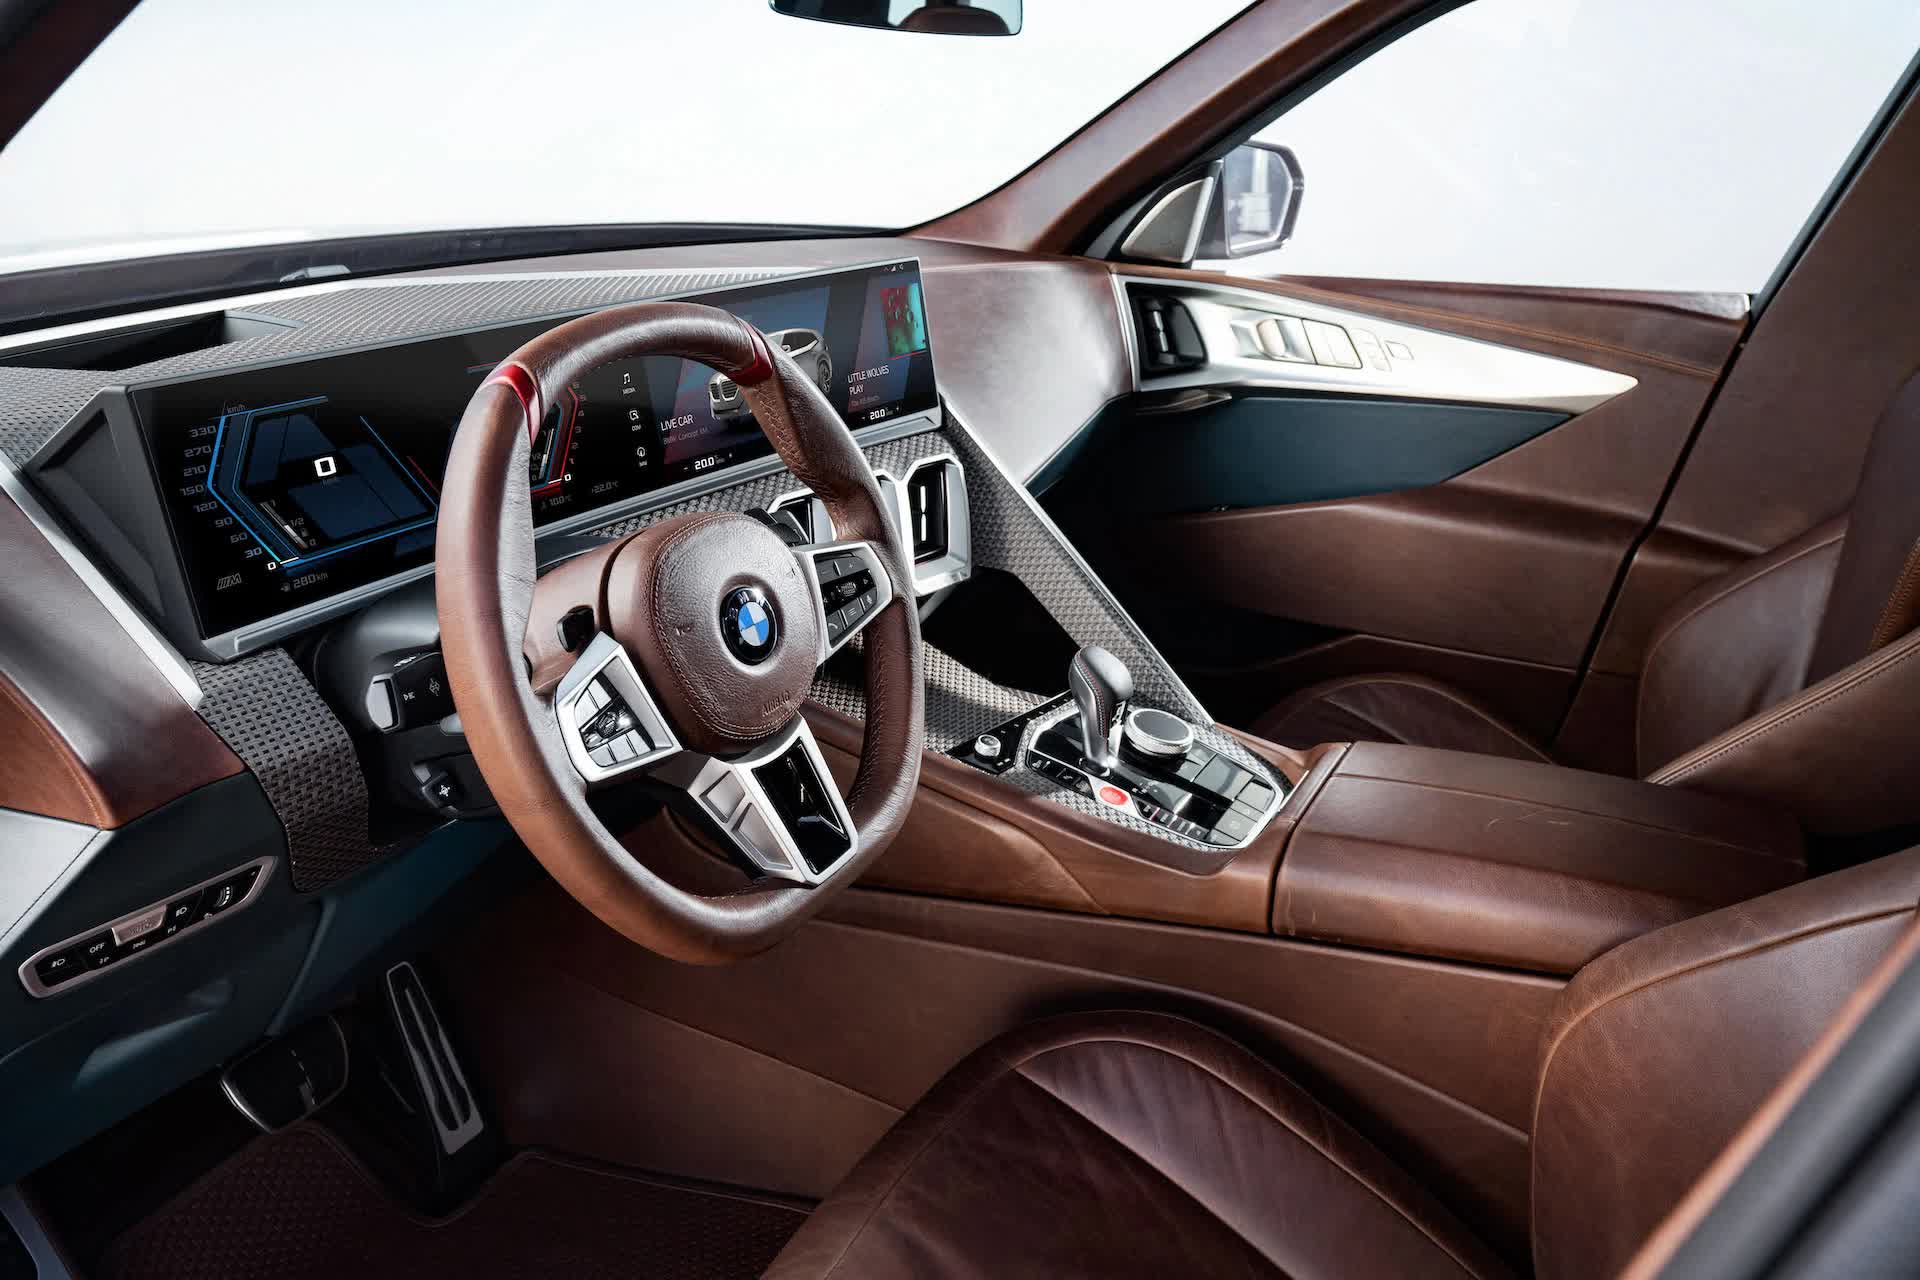 BMW vươn tầm làm siêu SUV: BMW XM sẽ cạnh tranh Lamborghini Urus - Ảnh 3.